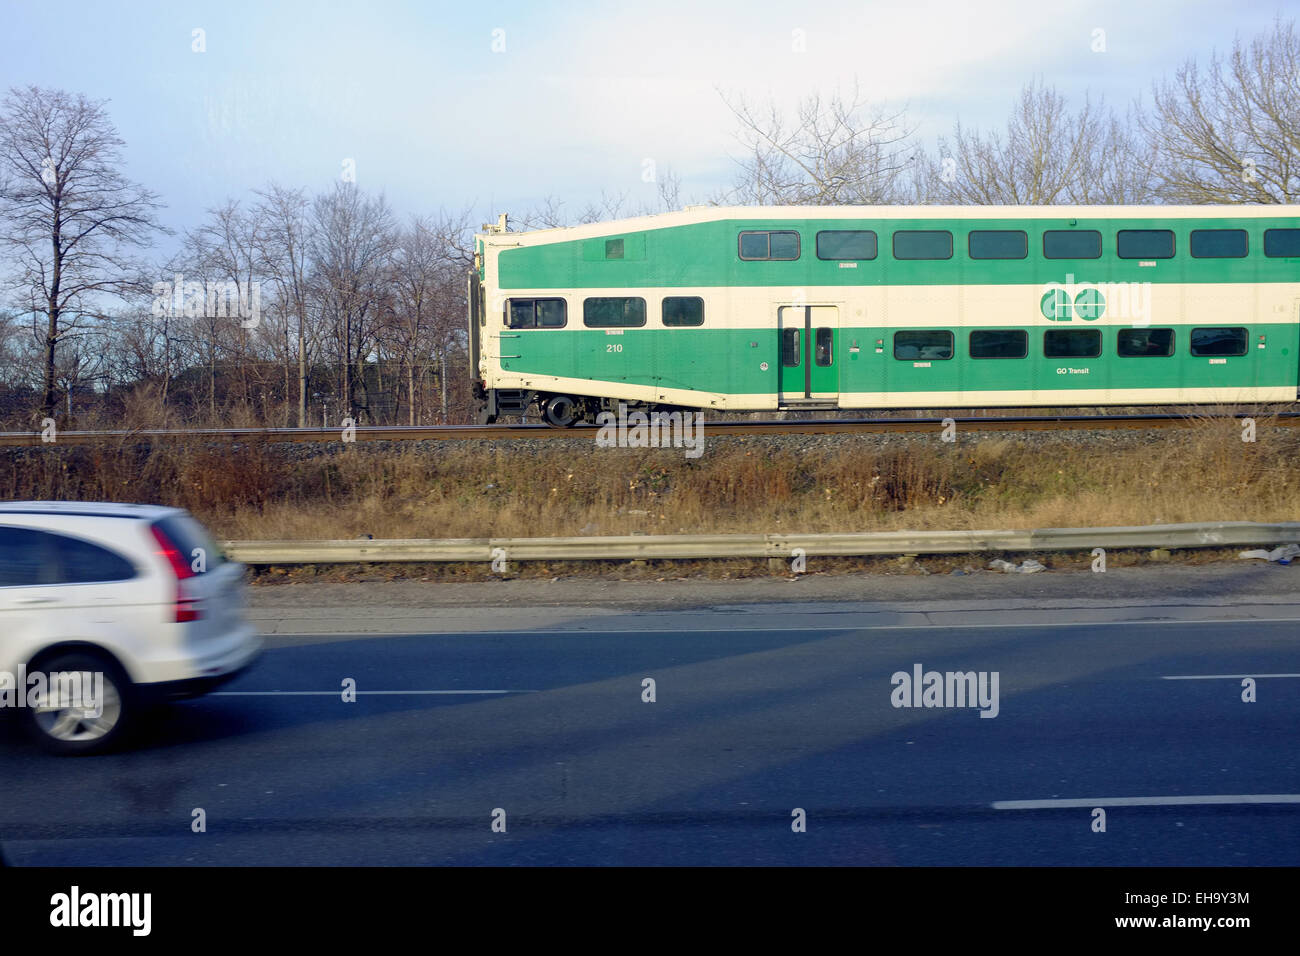 Un double-decker train passe les voitures sur une route au Canada. Banque D'Images